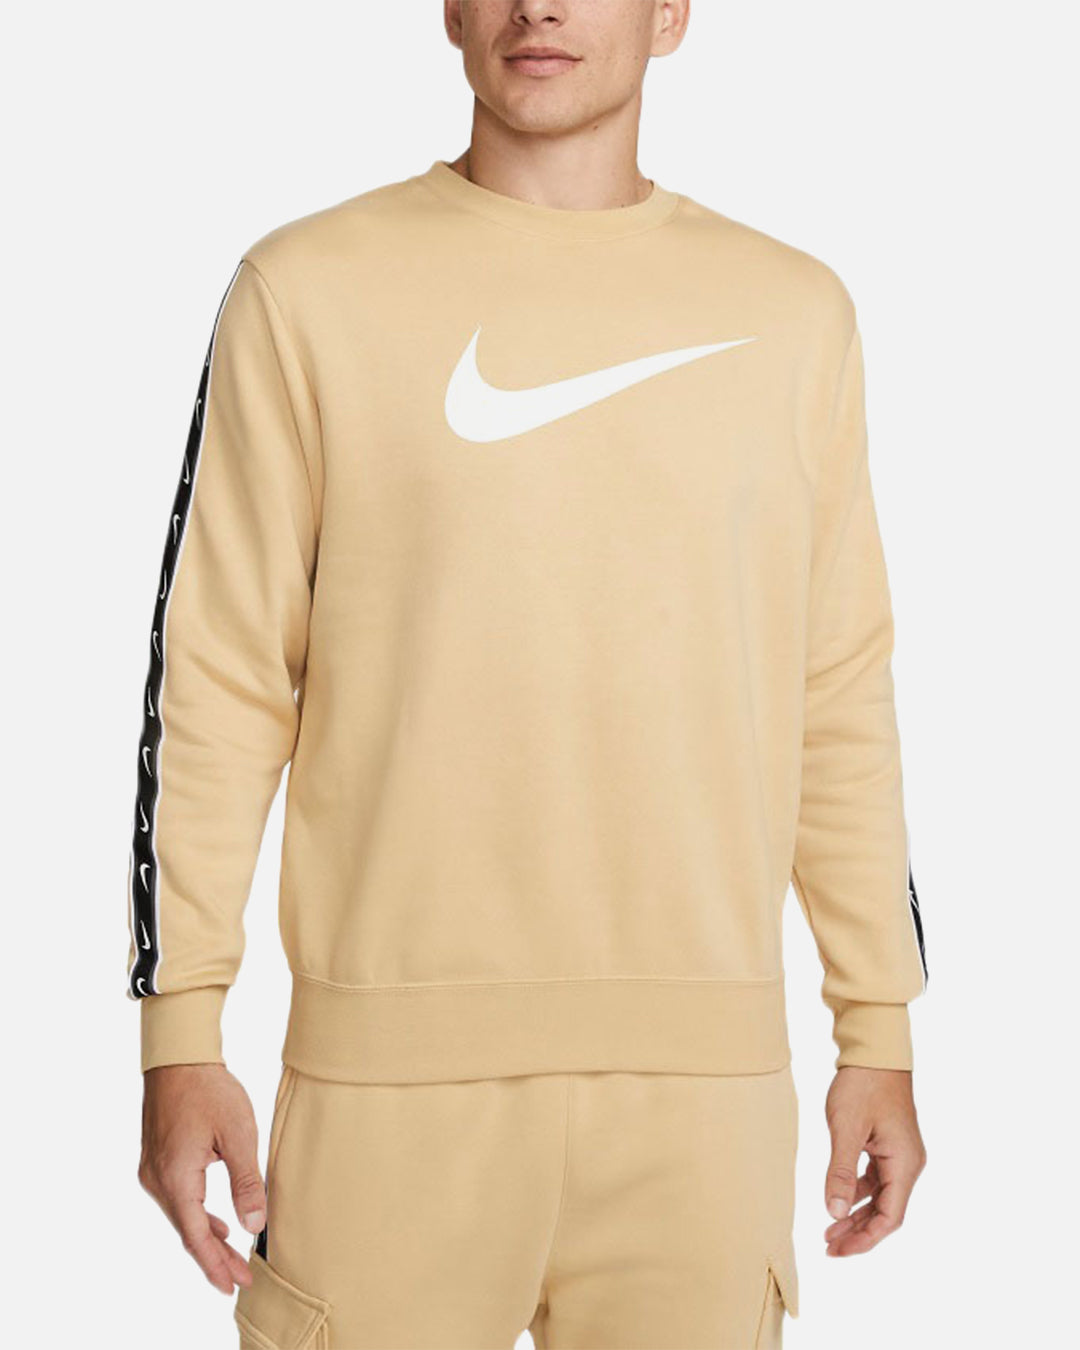 Sudadera Nike Sportswear Fleece - Beige/Blanco/Noir